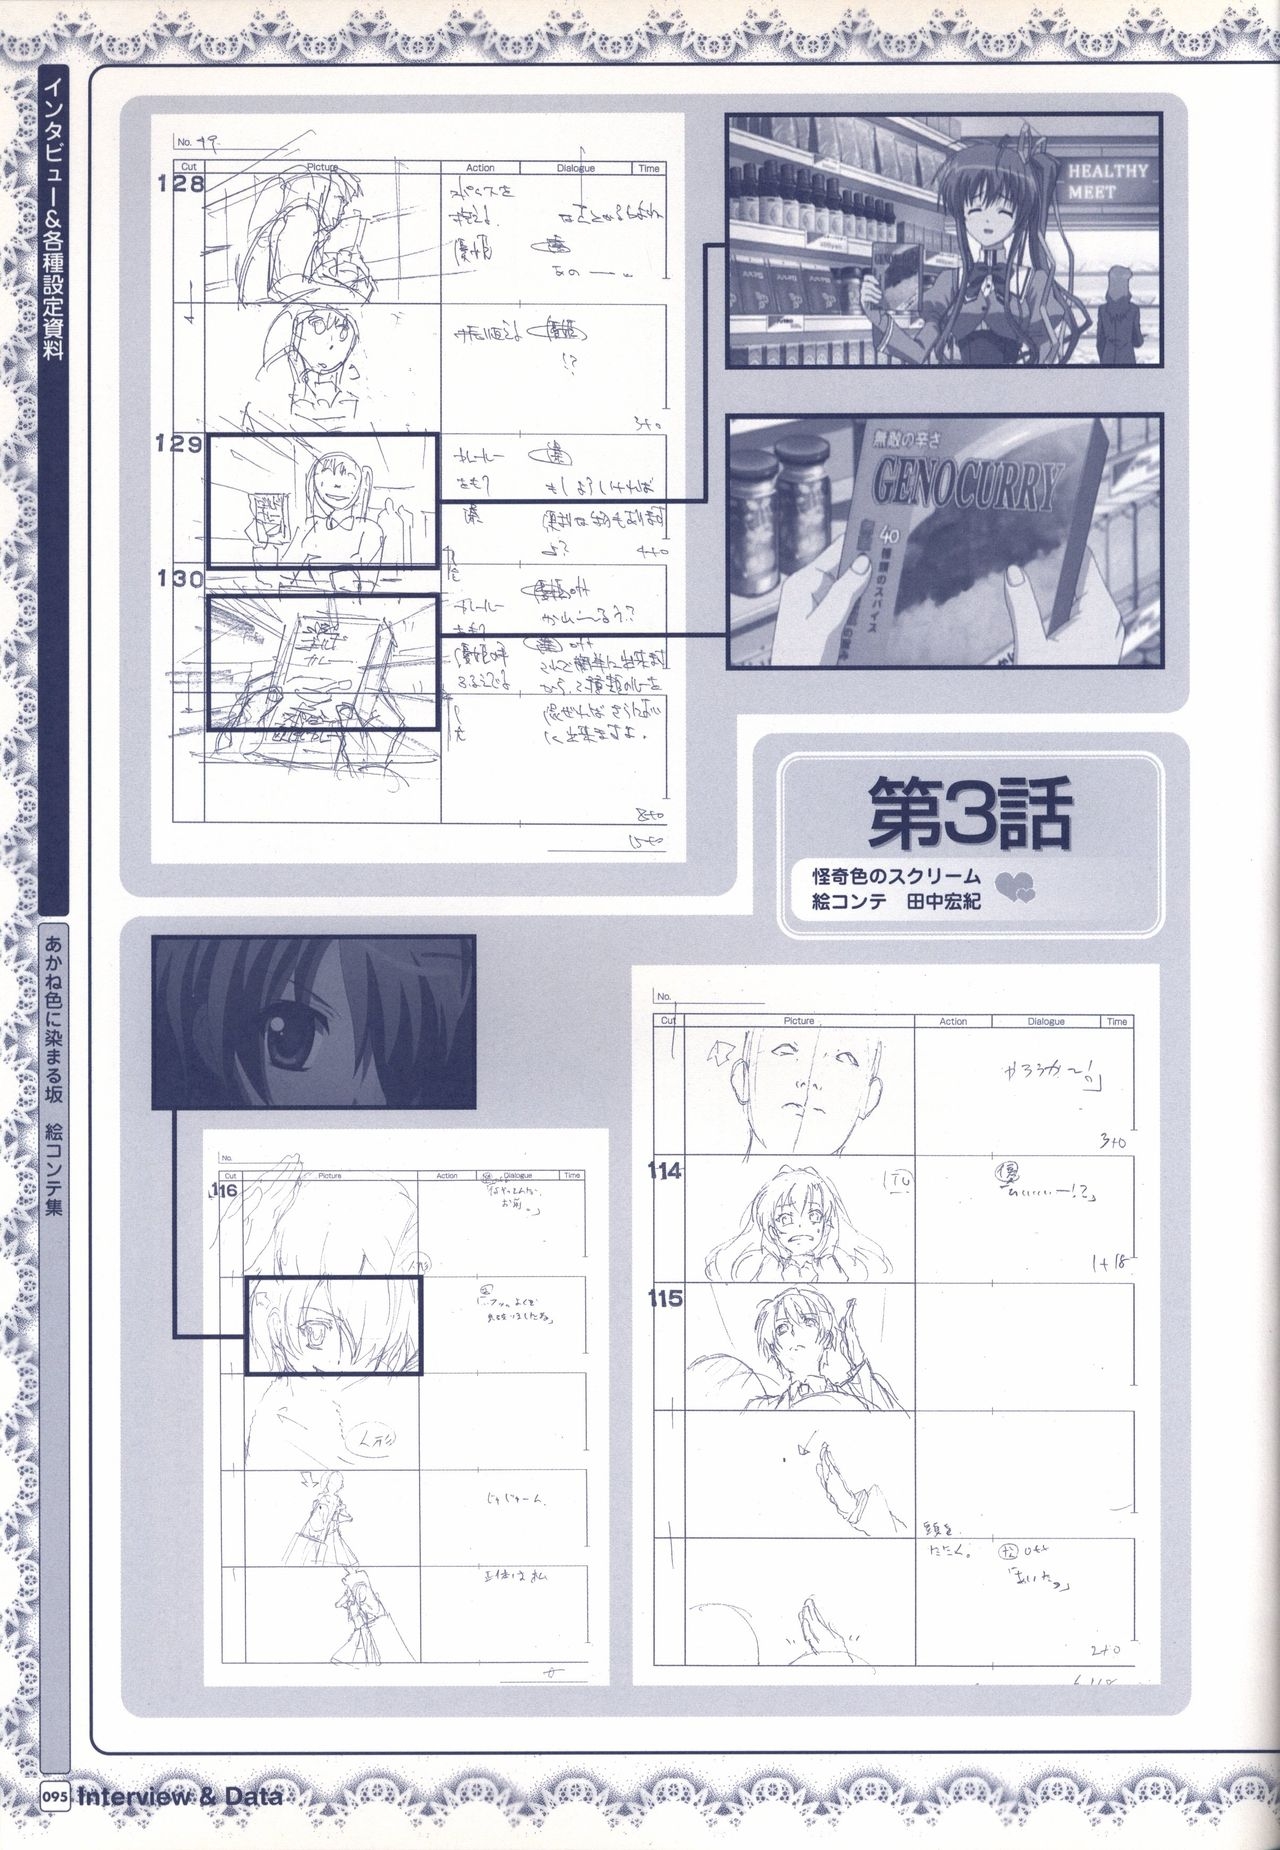 TV ANIME Akaneiro ni Somaru Saka Visual Guide Book 95